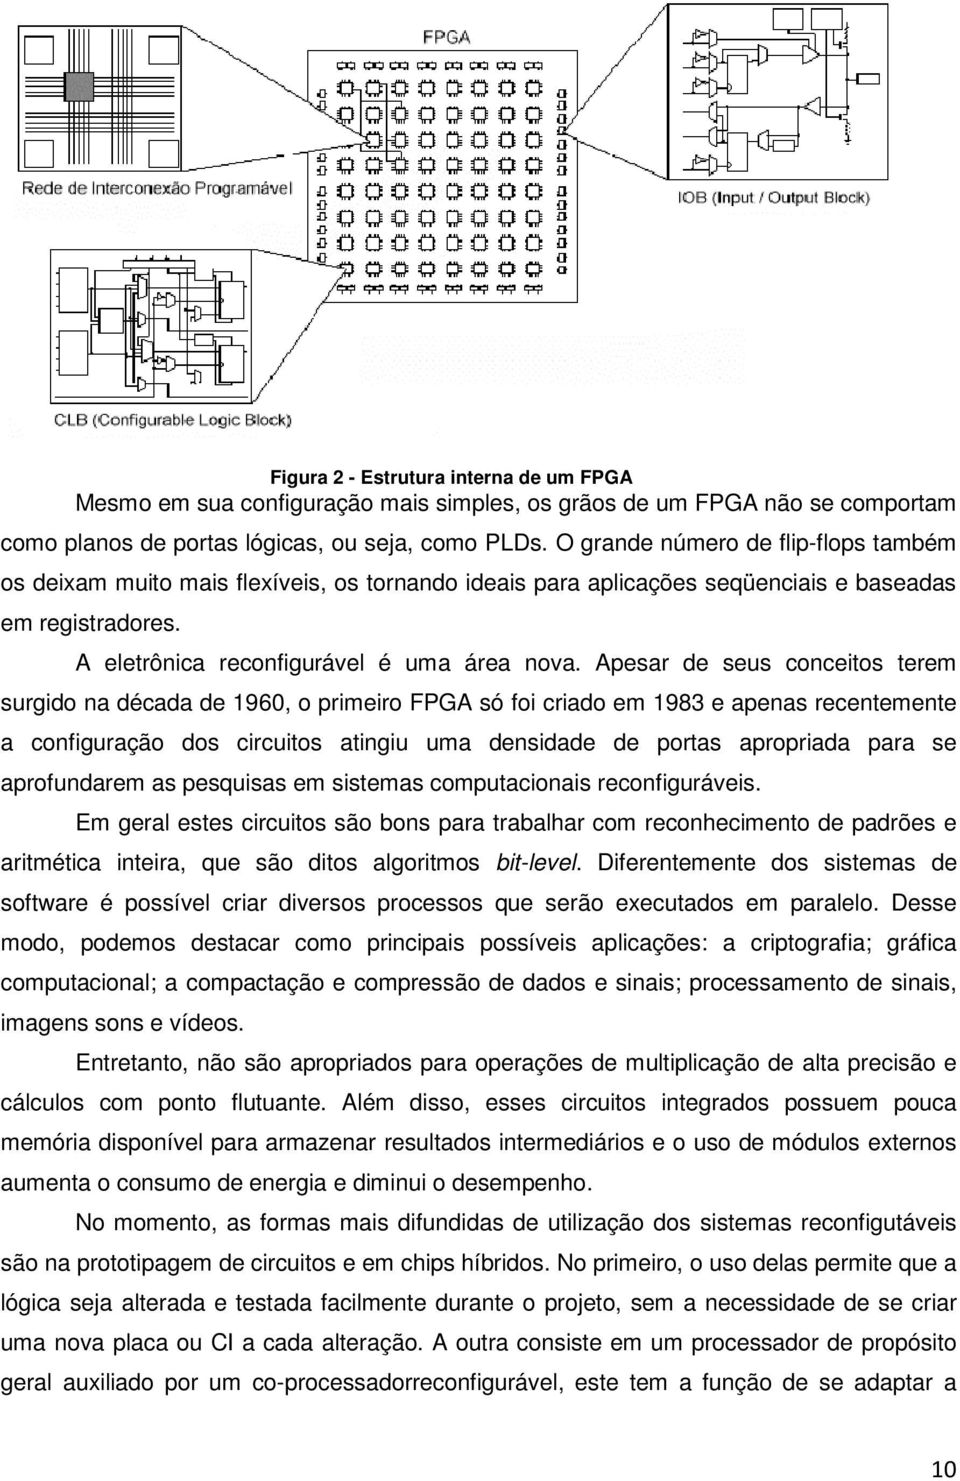 Apesar de seus conceitos terem surgido na década de 1960, o primeiro FPGA só foi criado em 1983 e apenas recentemente a configuração dos circuitos atingiu uma densidade de portas apropriada para se